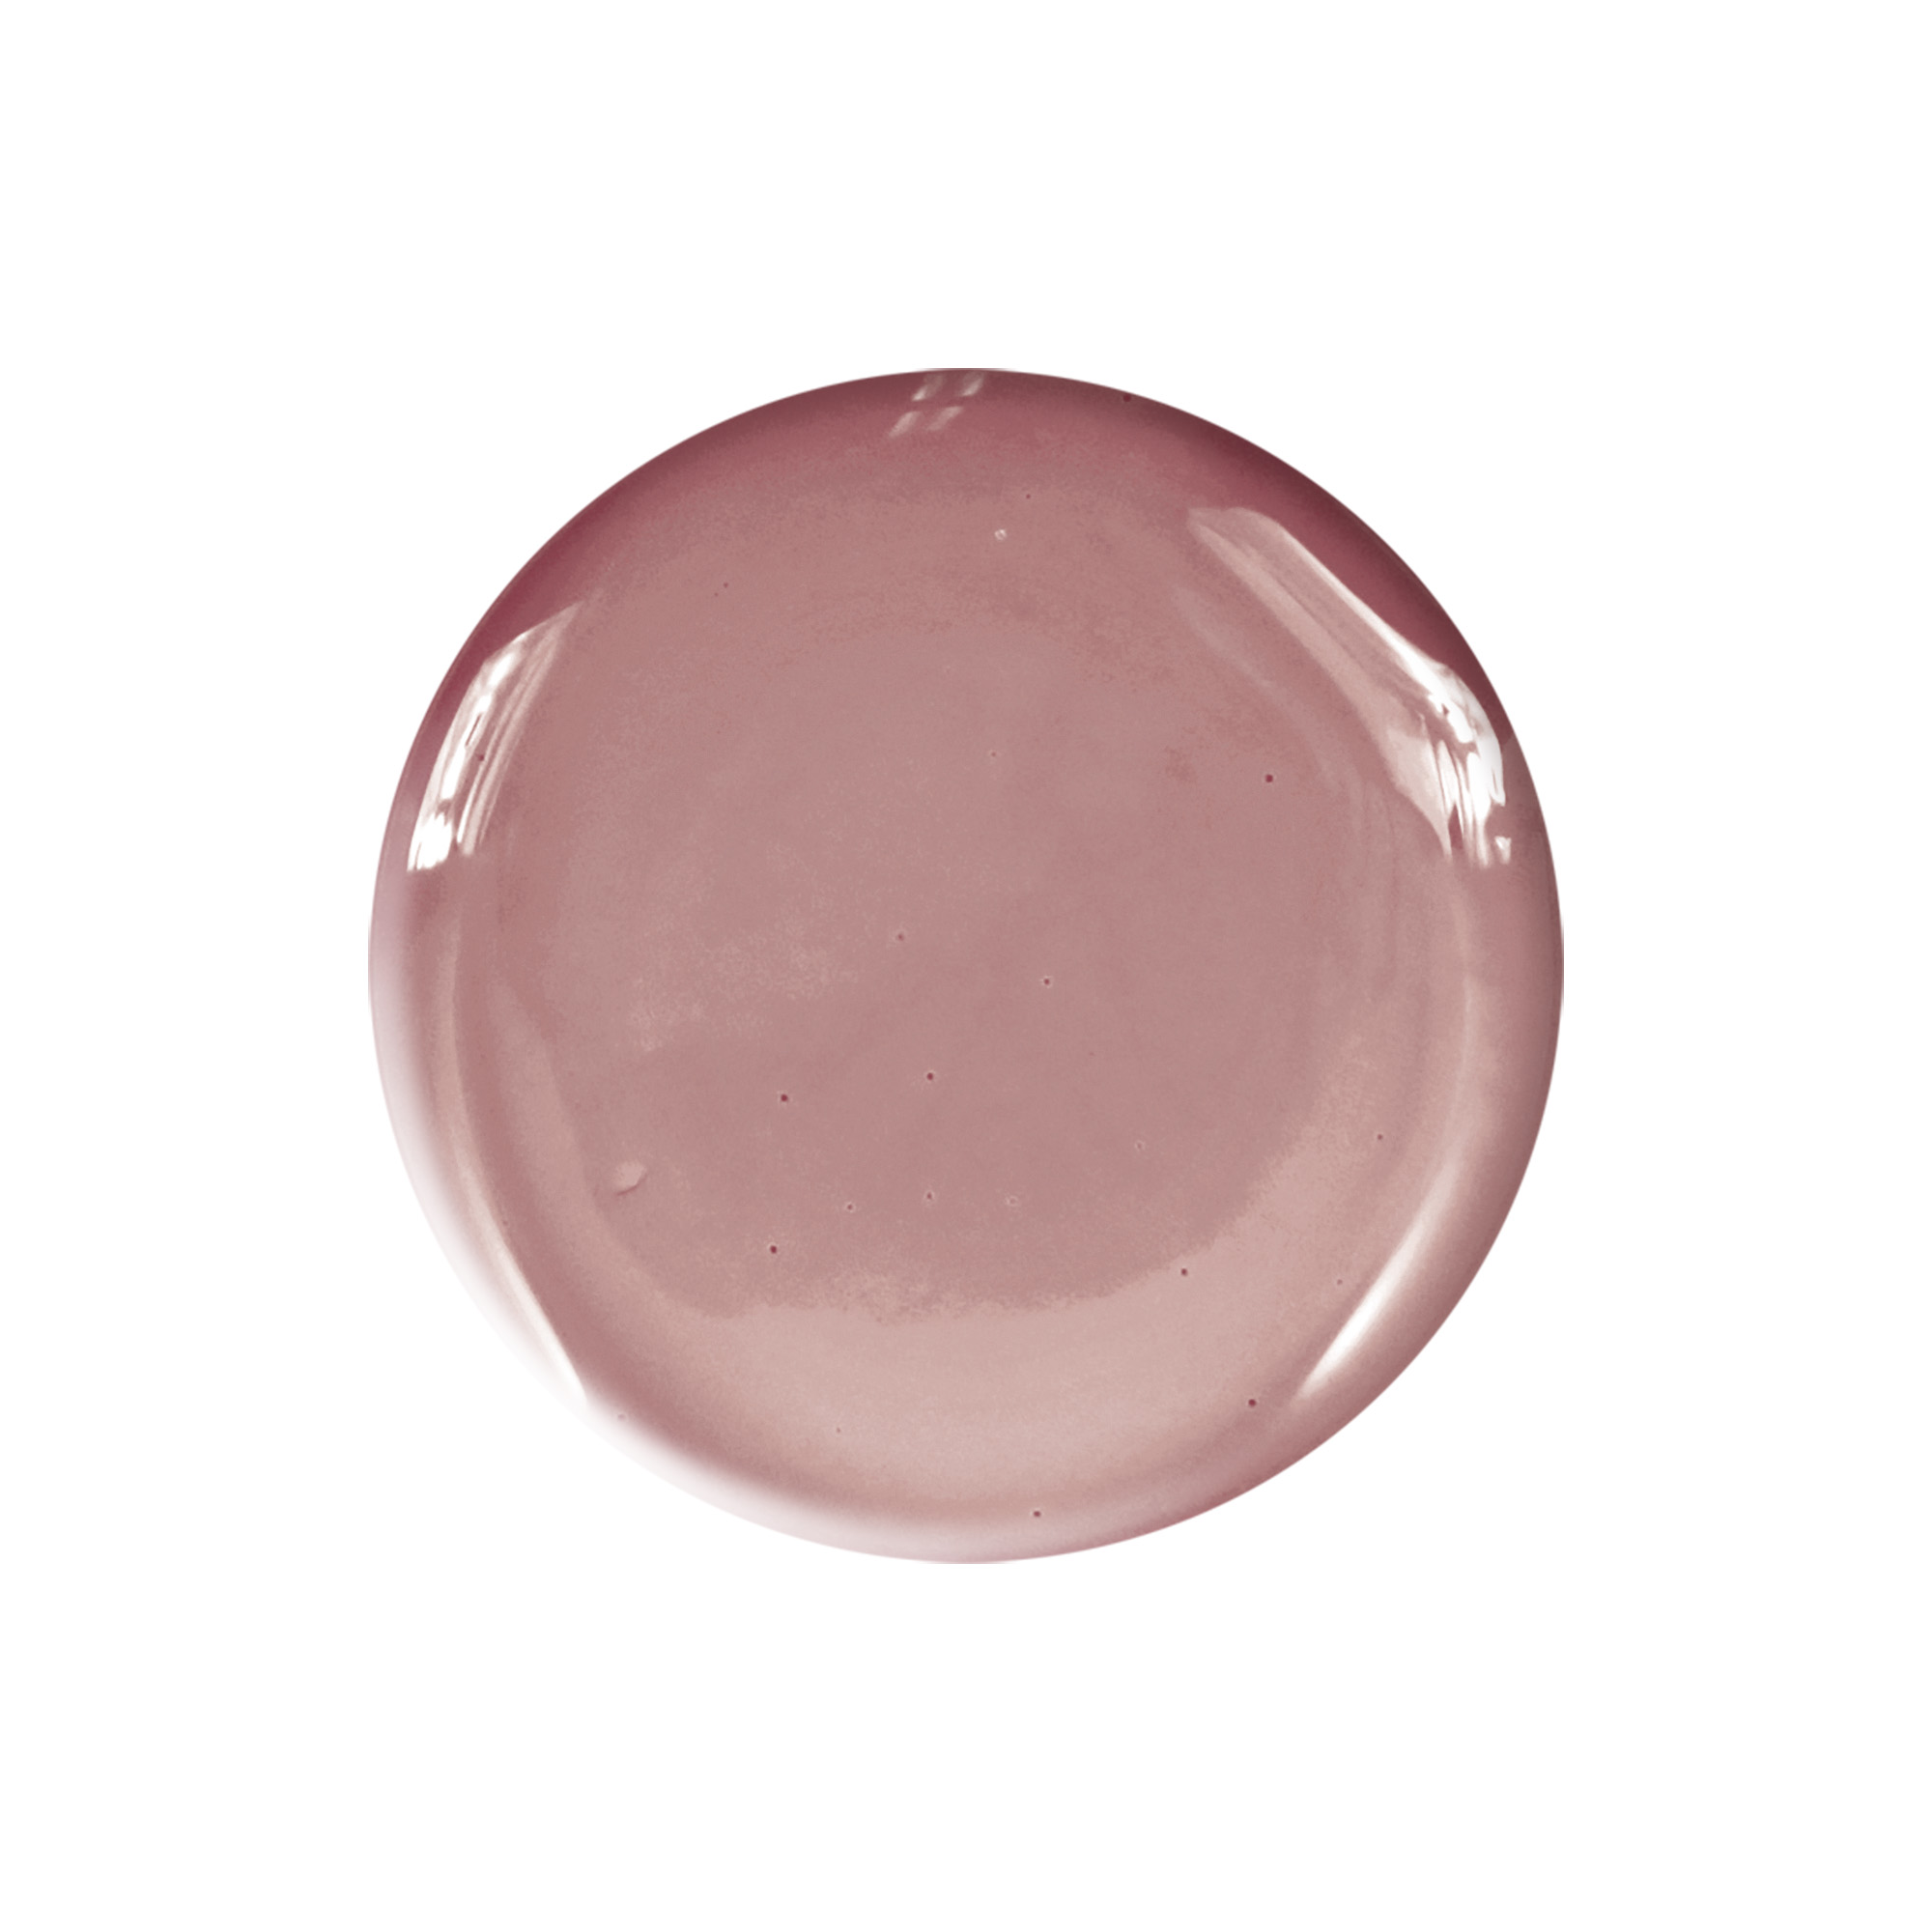 Smalto semipermanente rosa nude Precious Secret 10 ml Laqerìs TNS